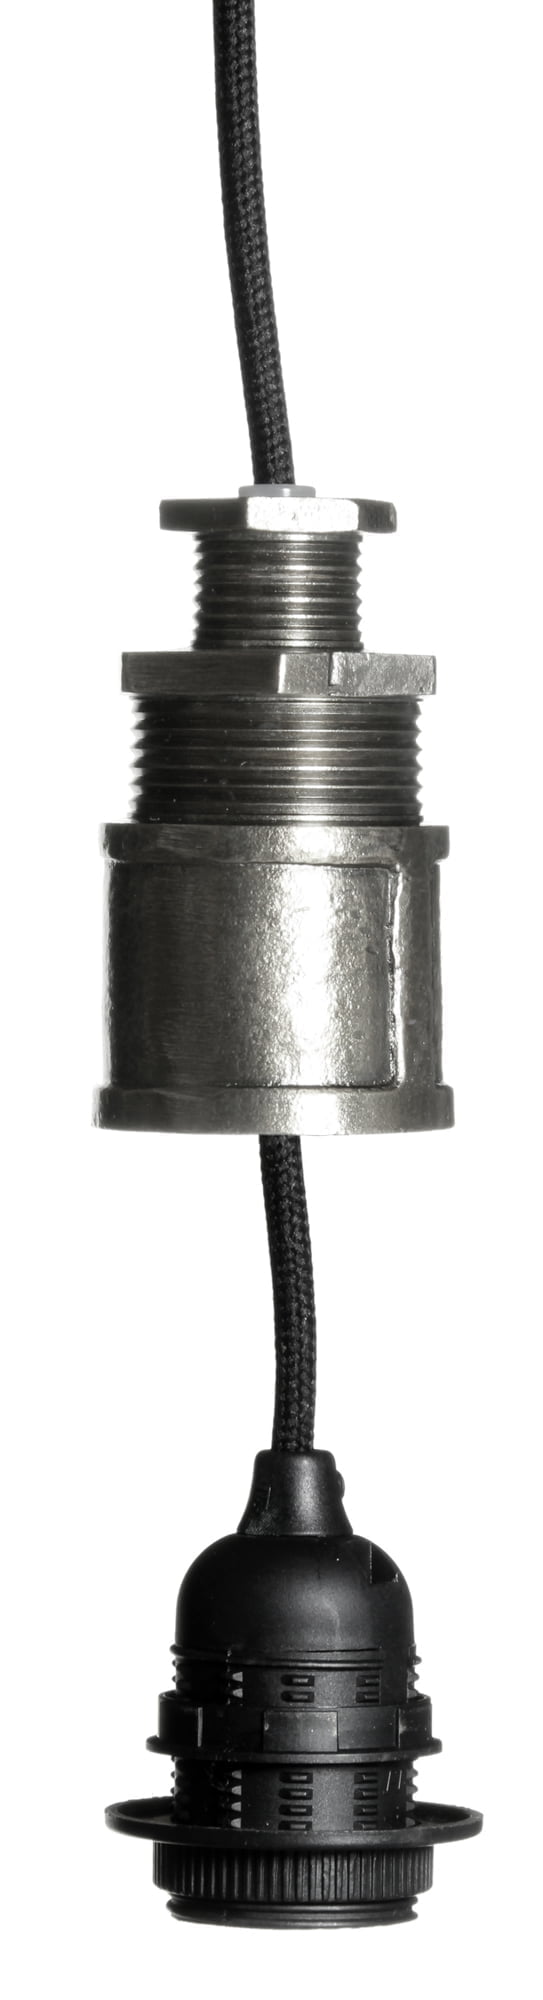 Teräksen värinen lampunkanta, jossa on musta, kangaspäällysteinen johto sekä ulosvedettävä sähköosa.